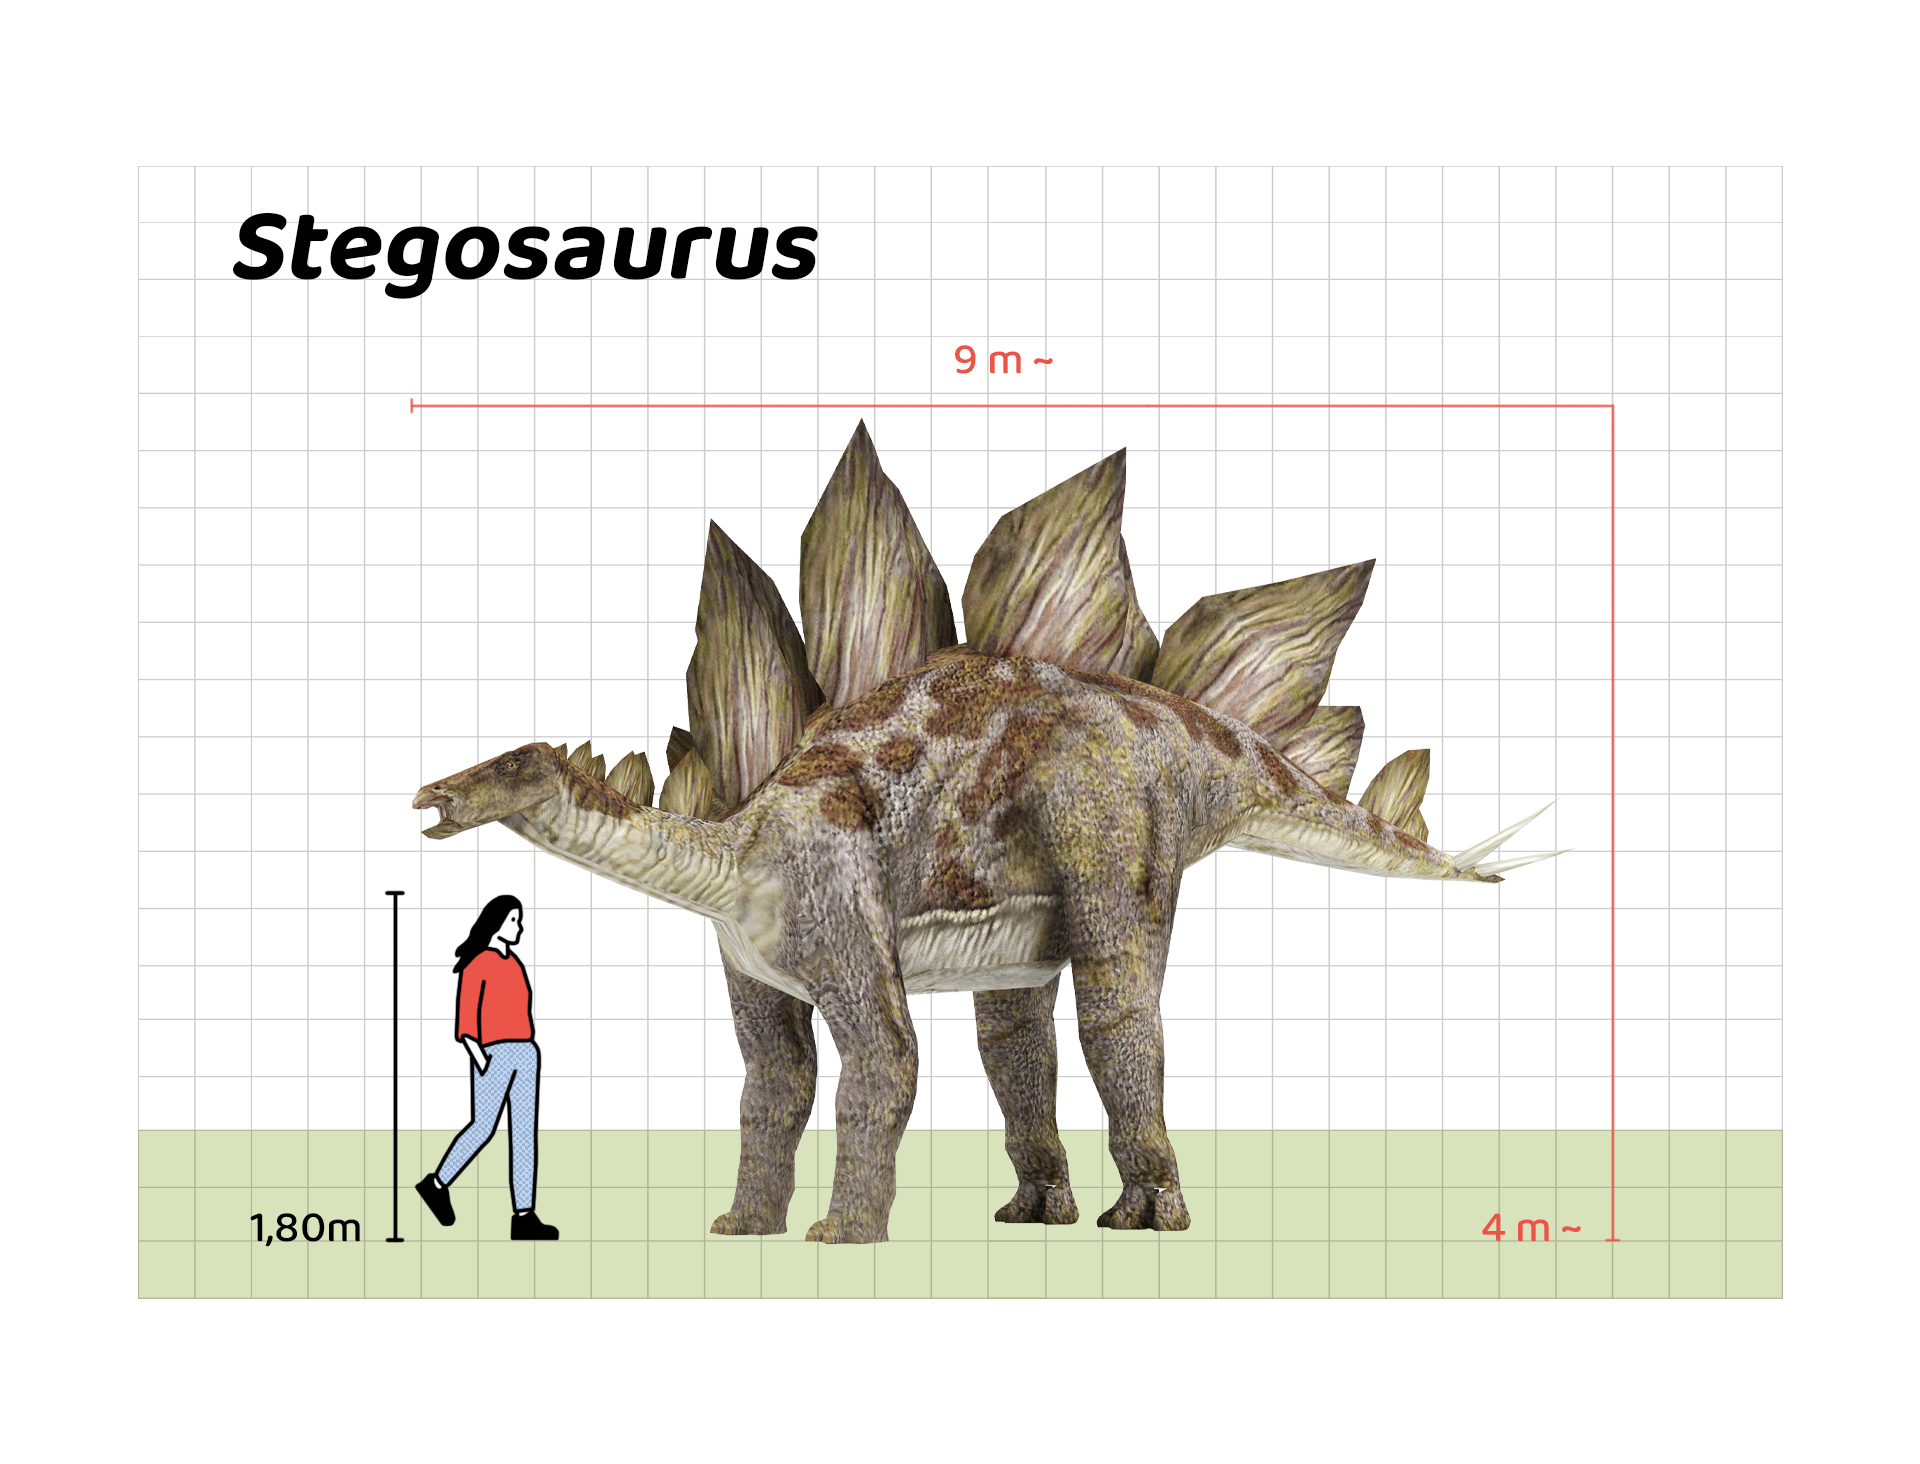 İnsan boyu ile Stegosaurus’un büyüklüğünün karşılaştırılması